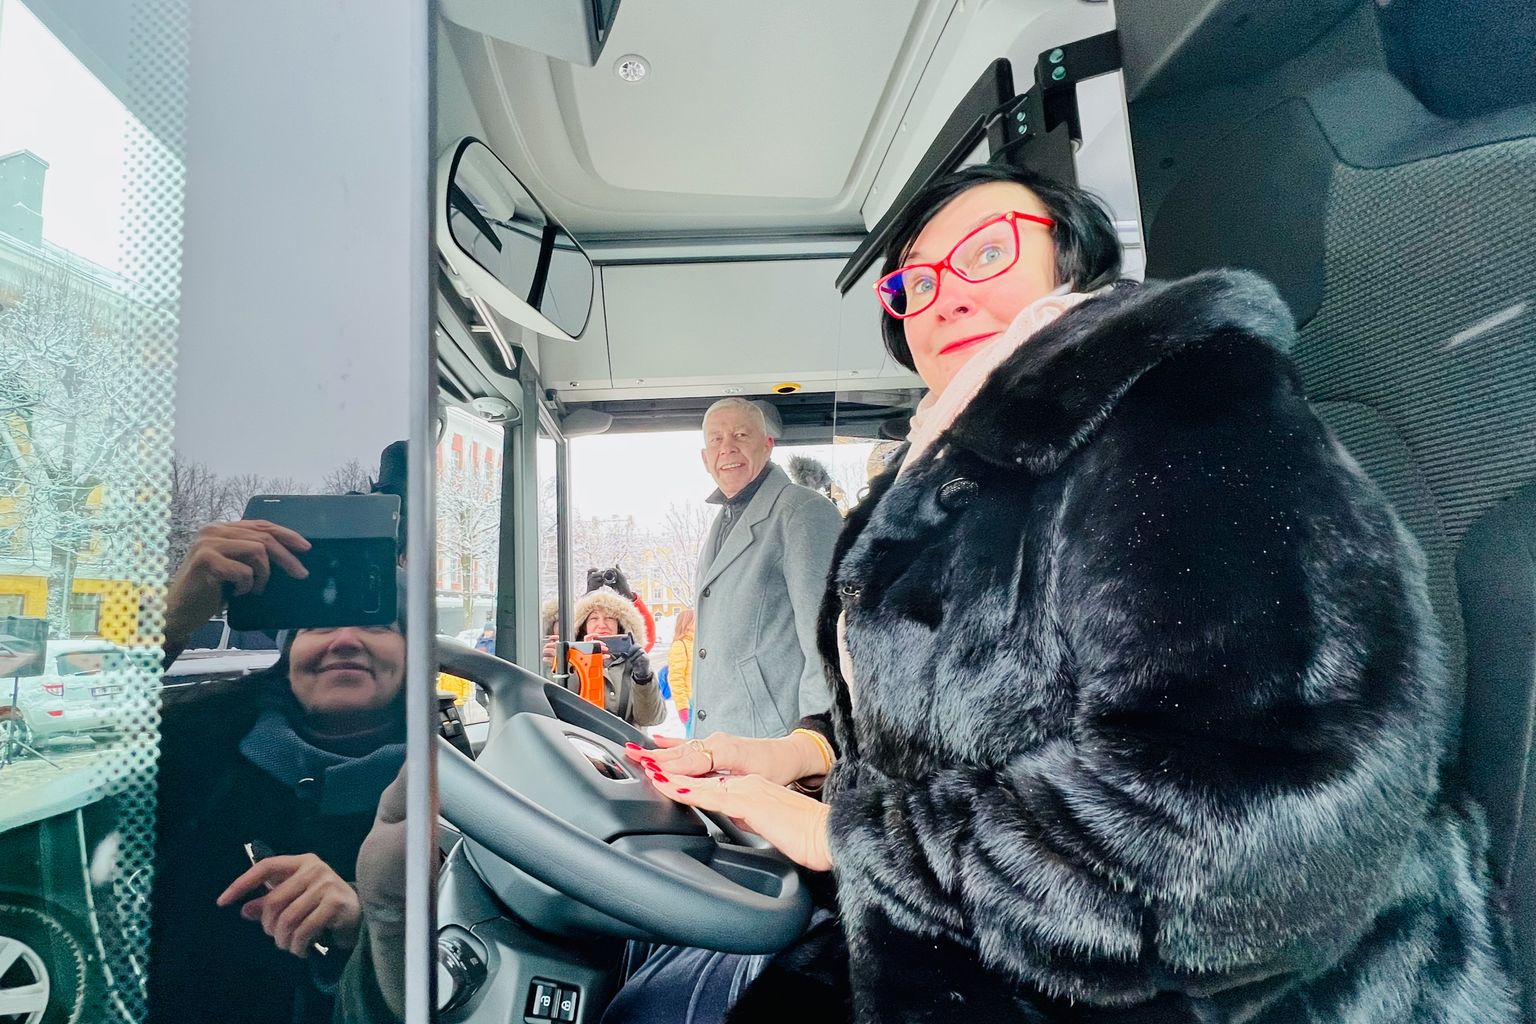 Мэр Нарвы села за руль нового городского автобуса и дала символический гудок, знаменующий старт восьмилетнего сотрудничества с перевозчиком из Тарту "GoBus".